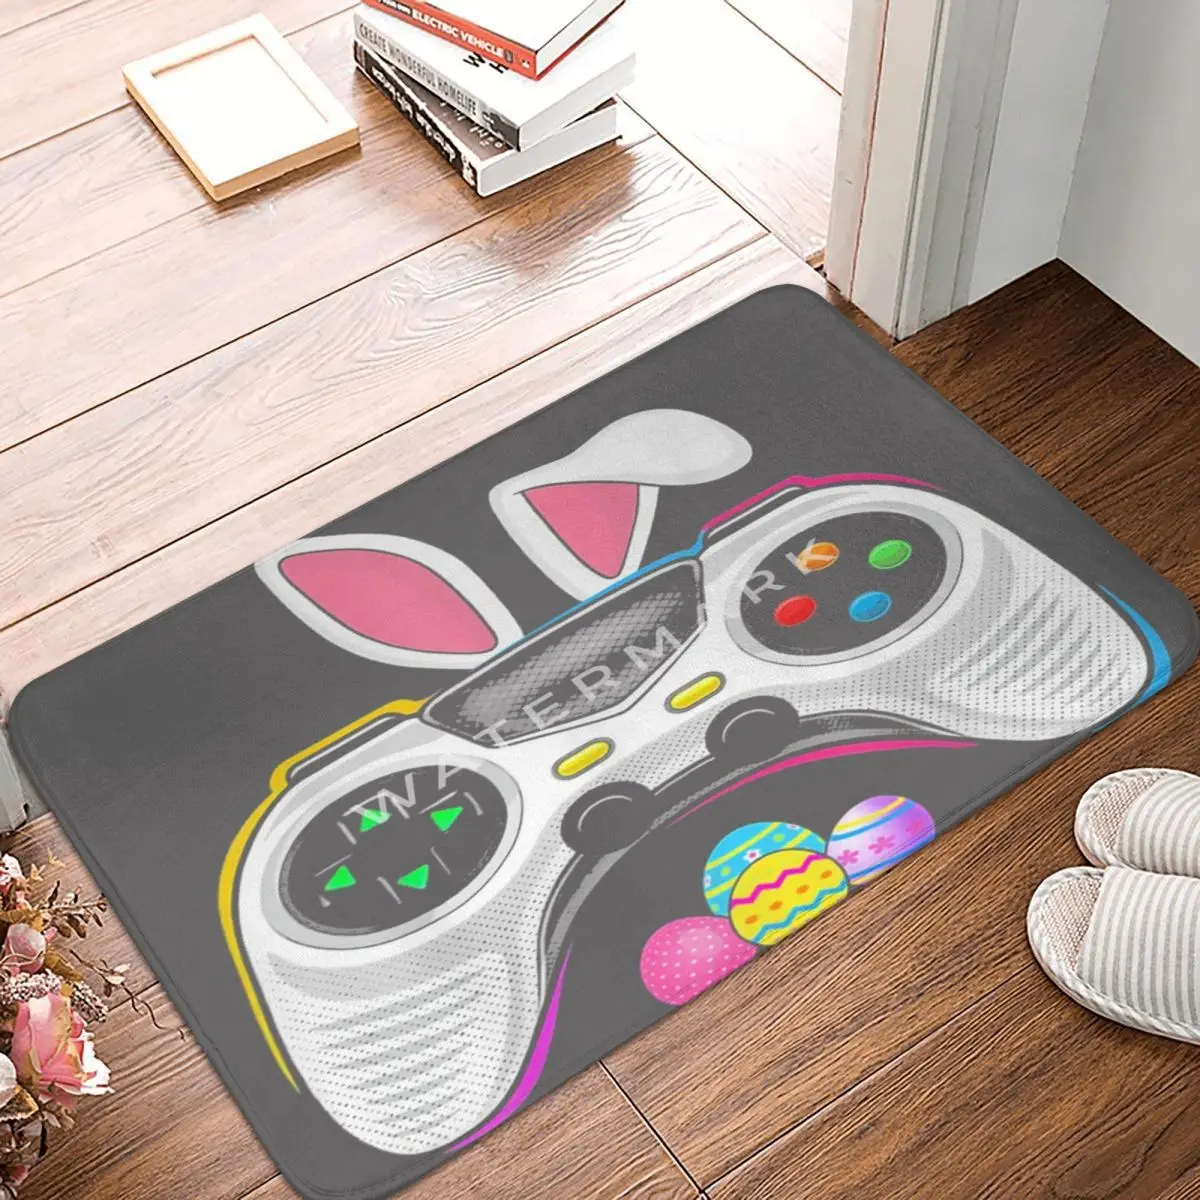 

Коврик с яйцами кролика для видеоигр, напольные коврики из полиэстера, праздничный прочный домашний декор, праздничные подарки, коврики на заказ